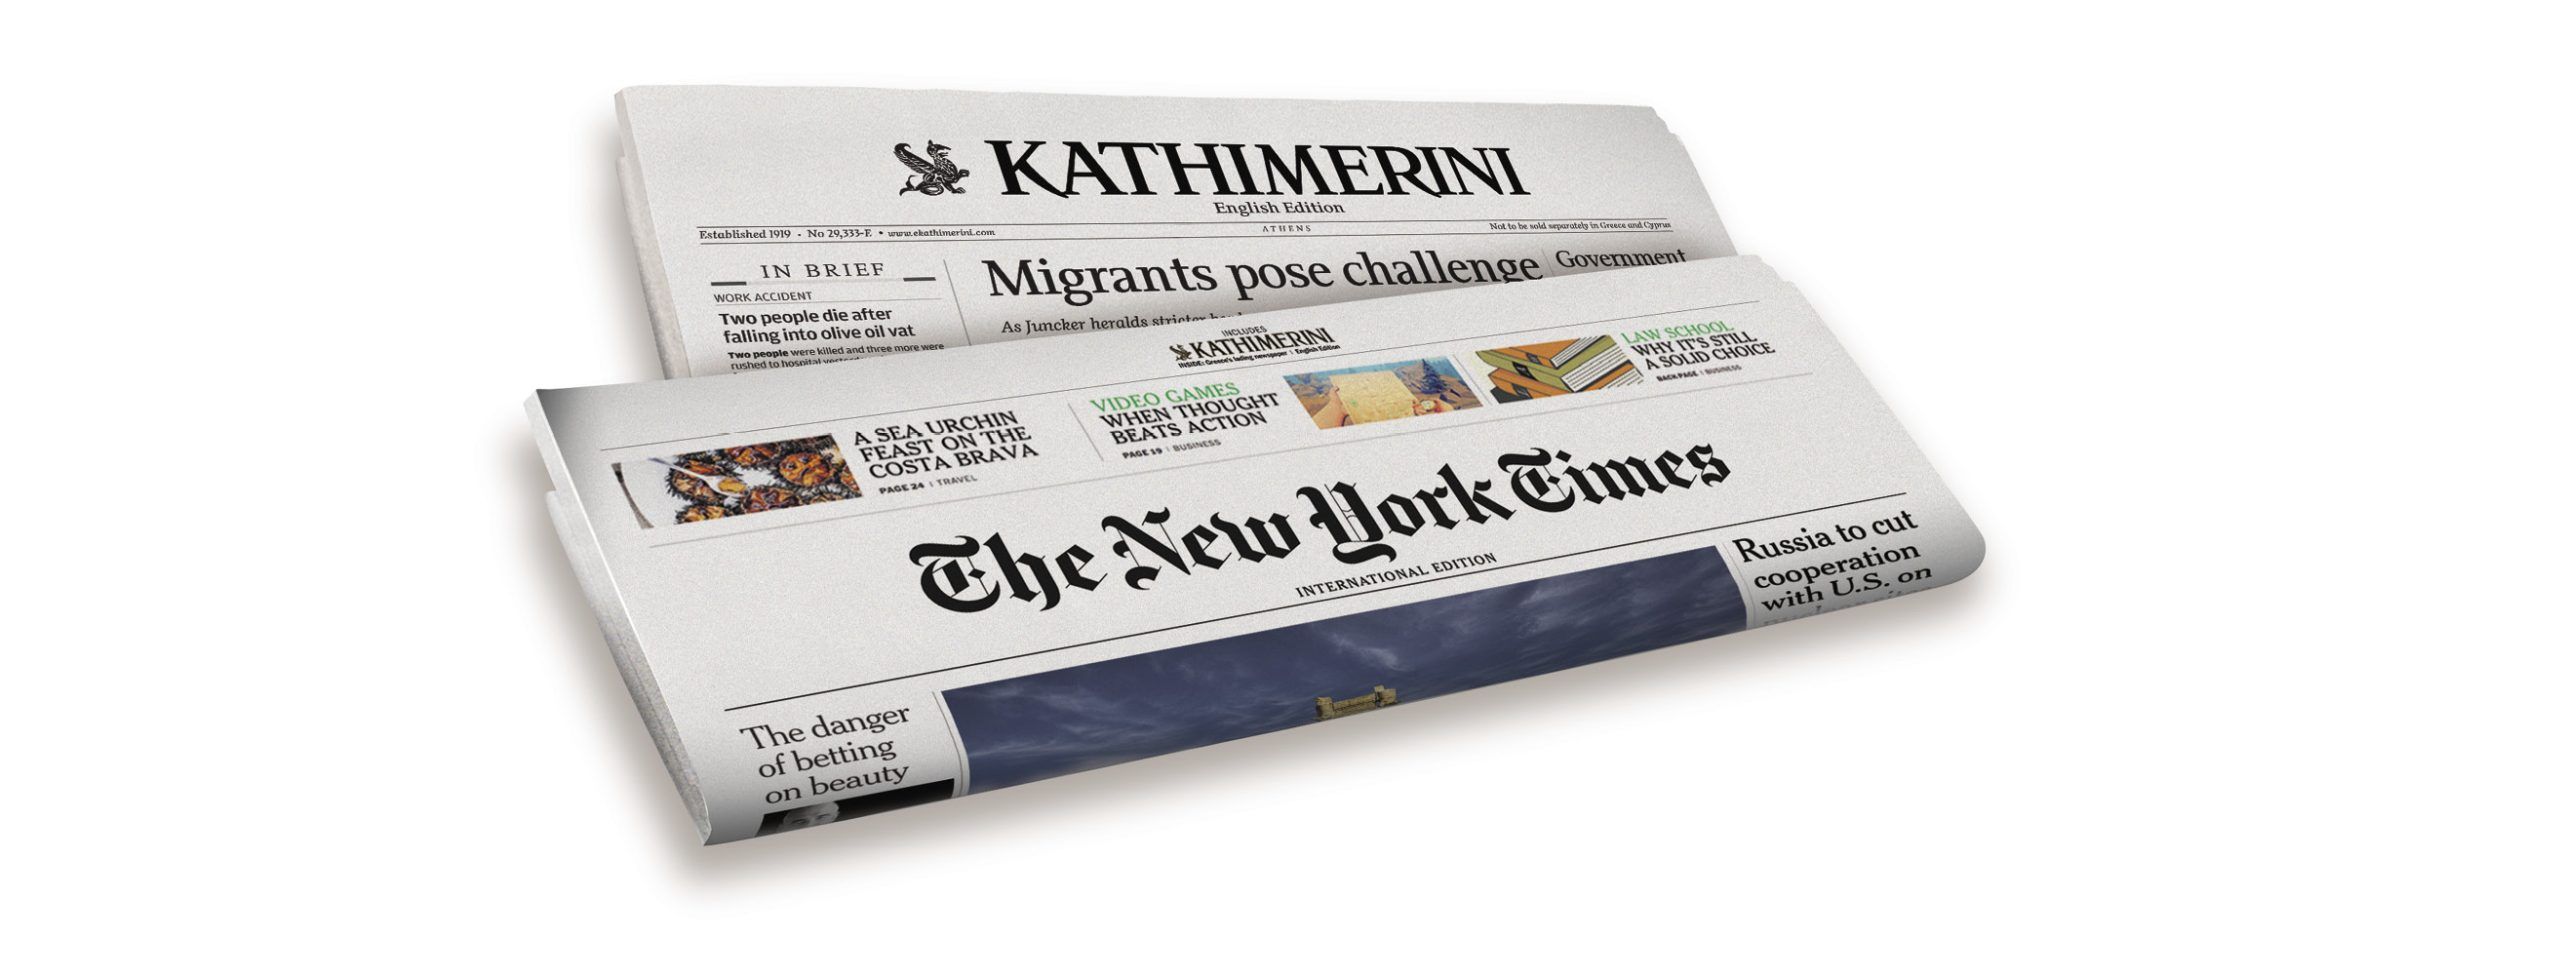 International New York Times - Kathimerini